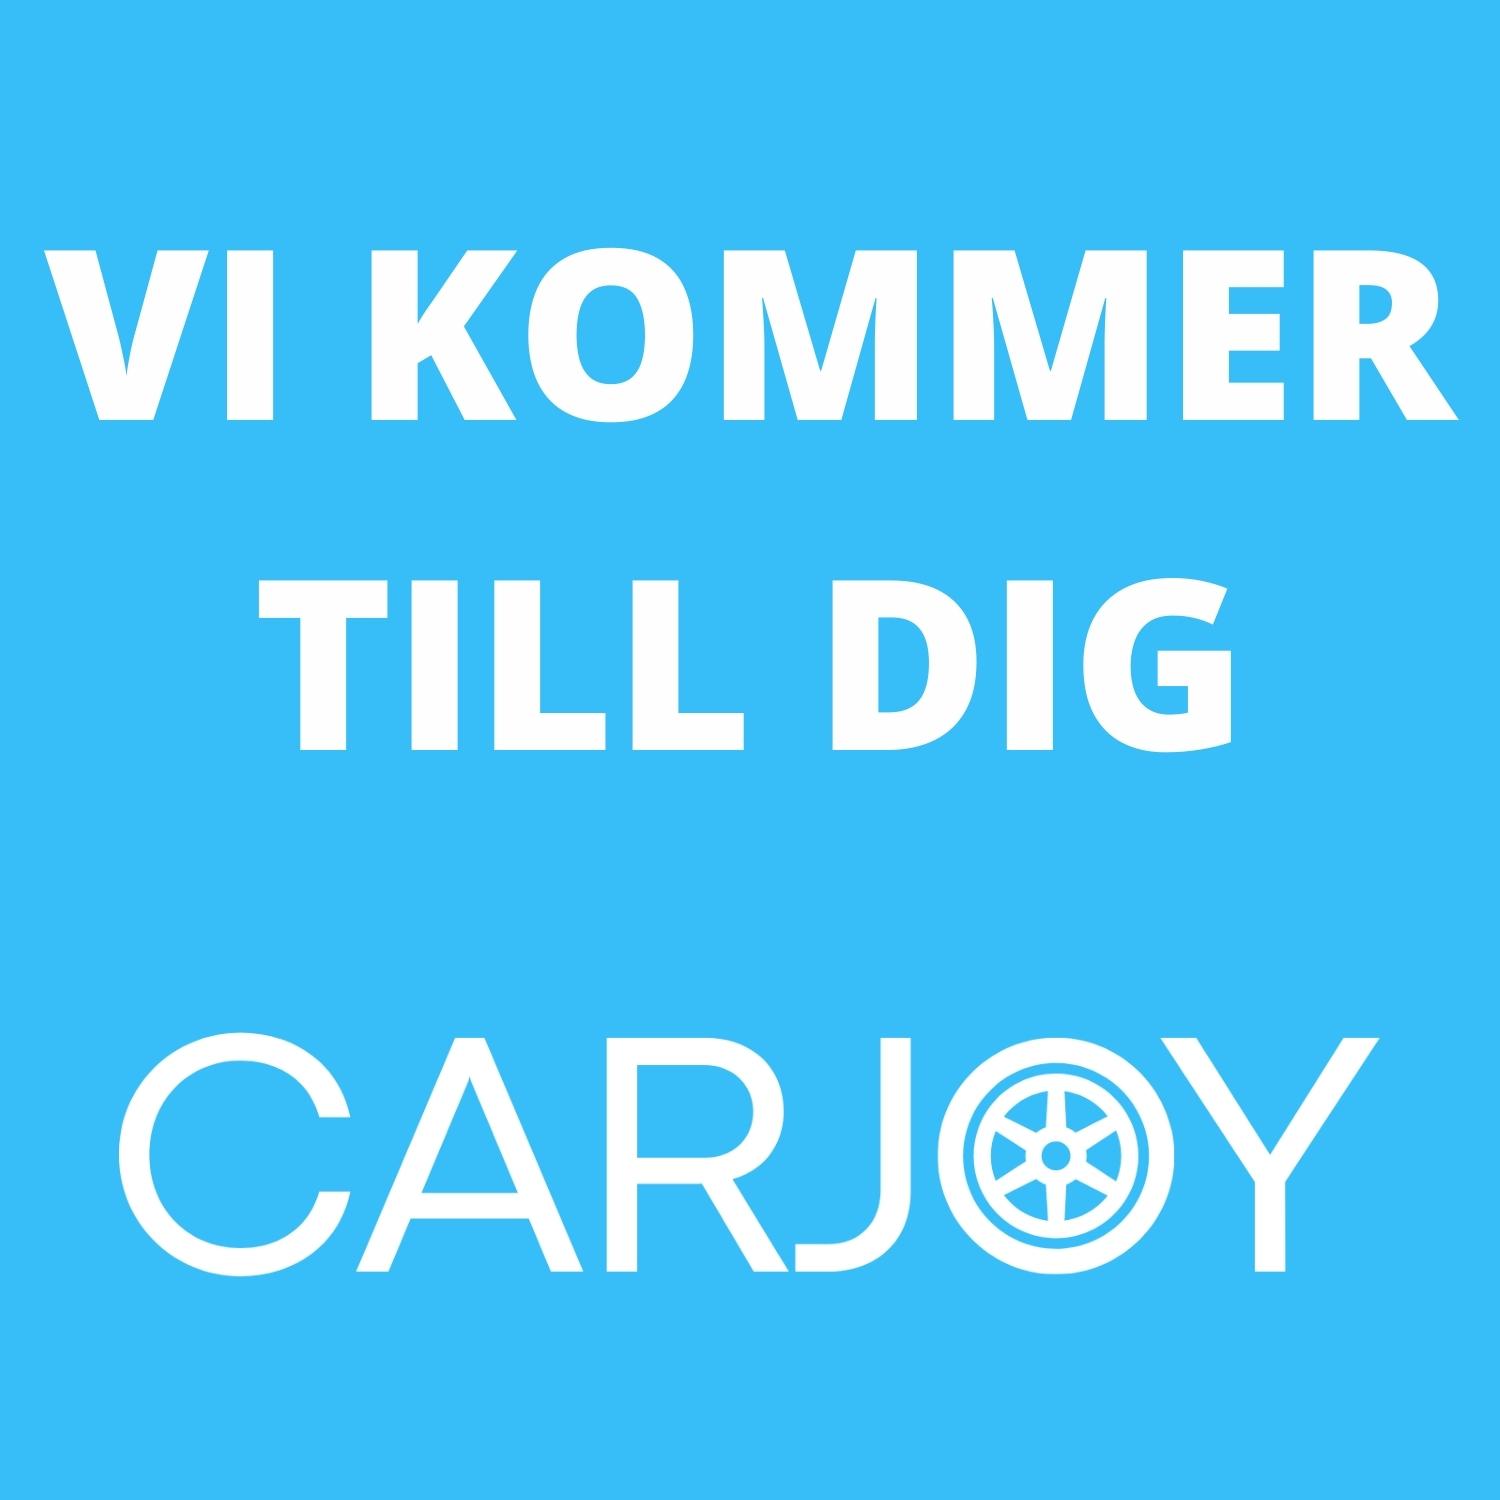 CARJOY Eskilstuna - Mobil Bilverkstad | Vi kommer till dig!  logo